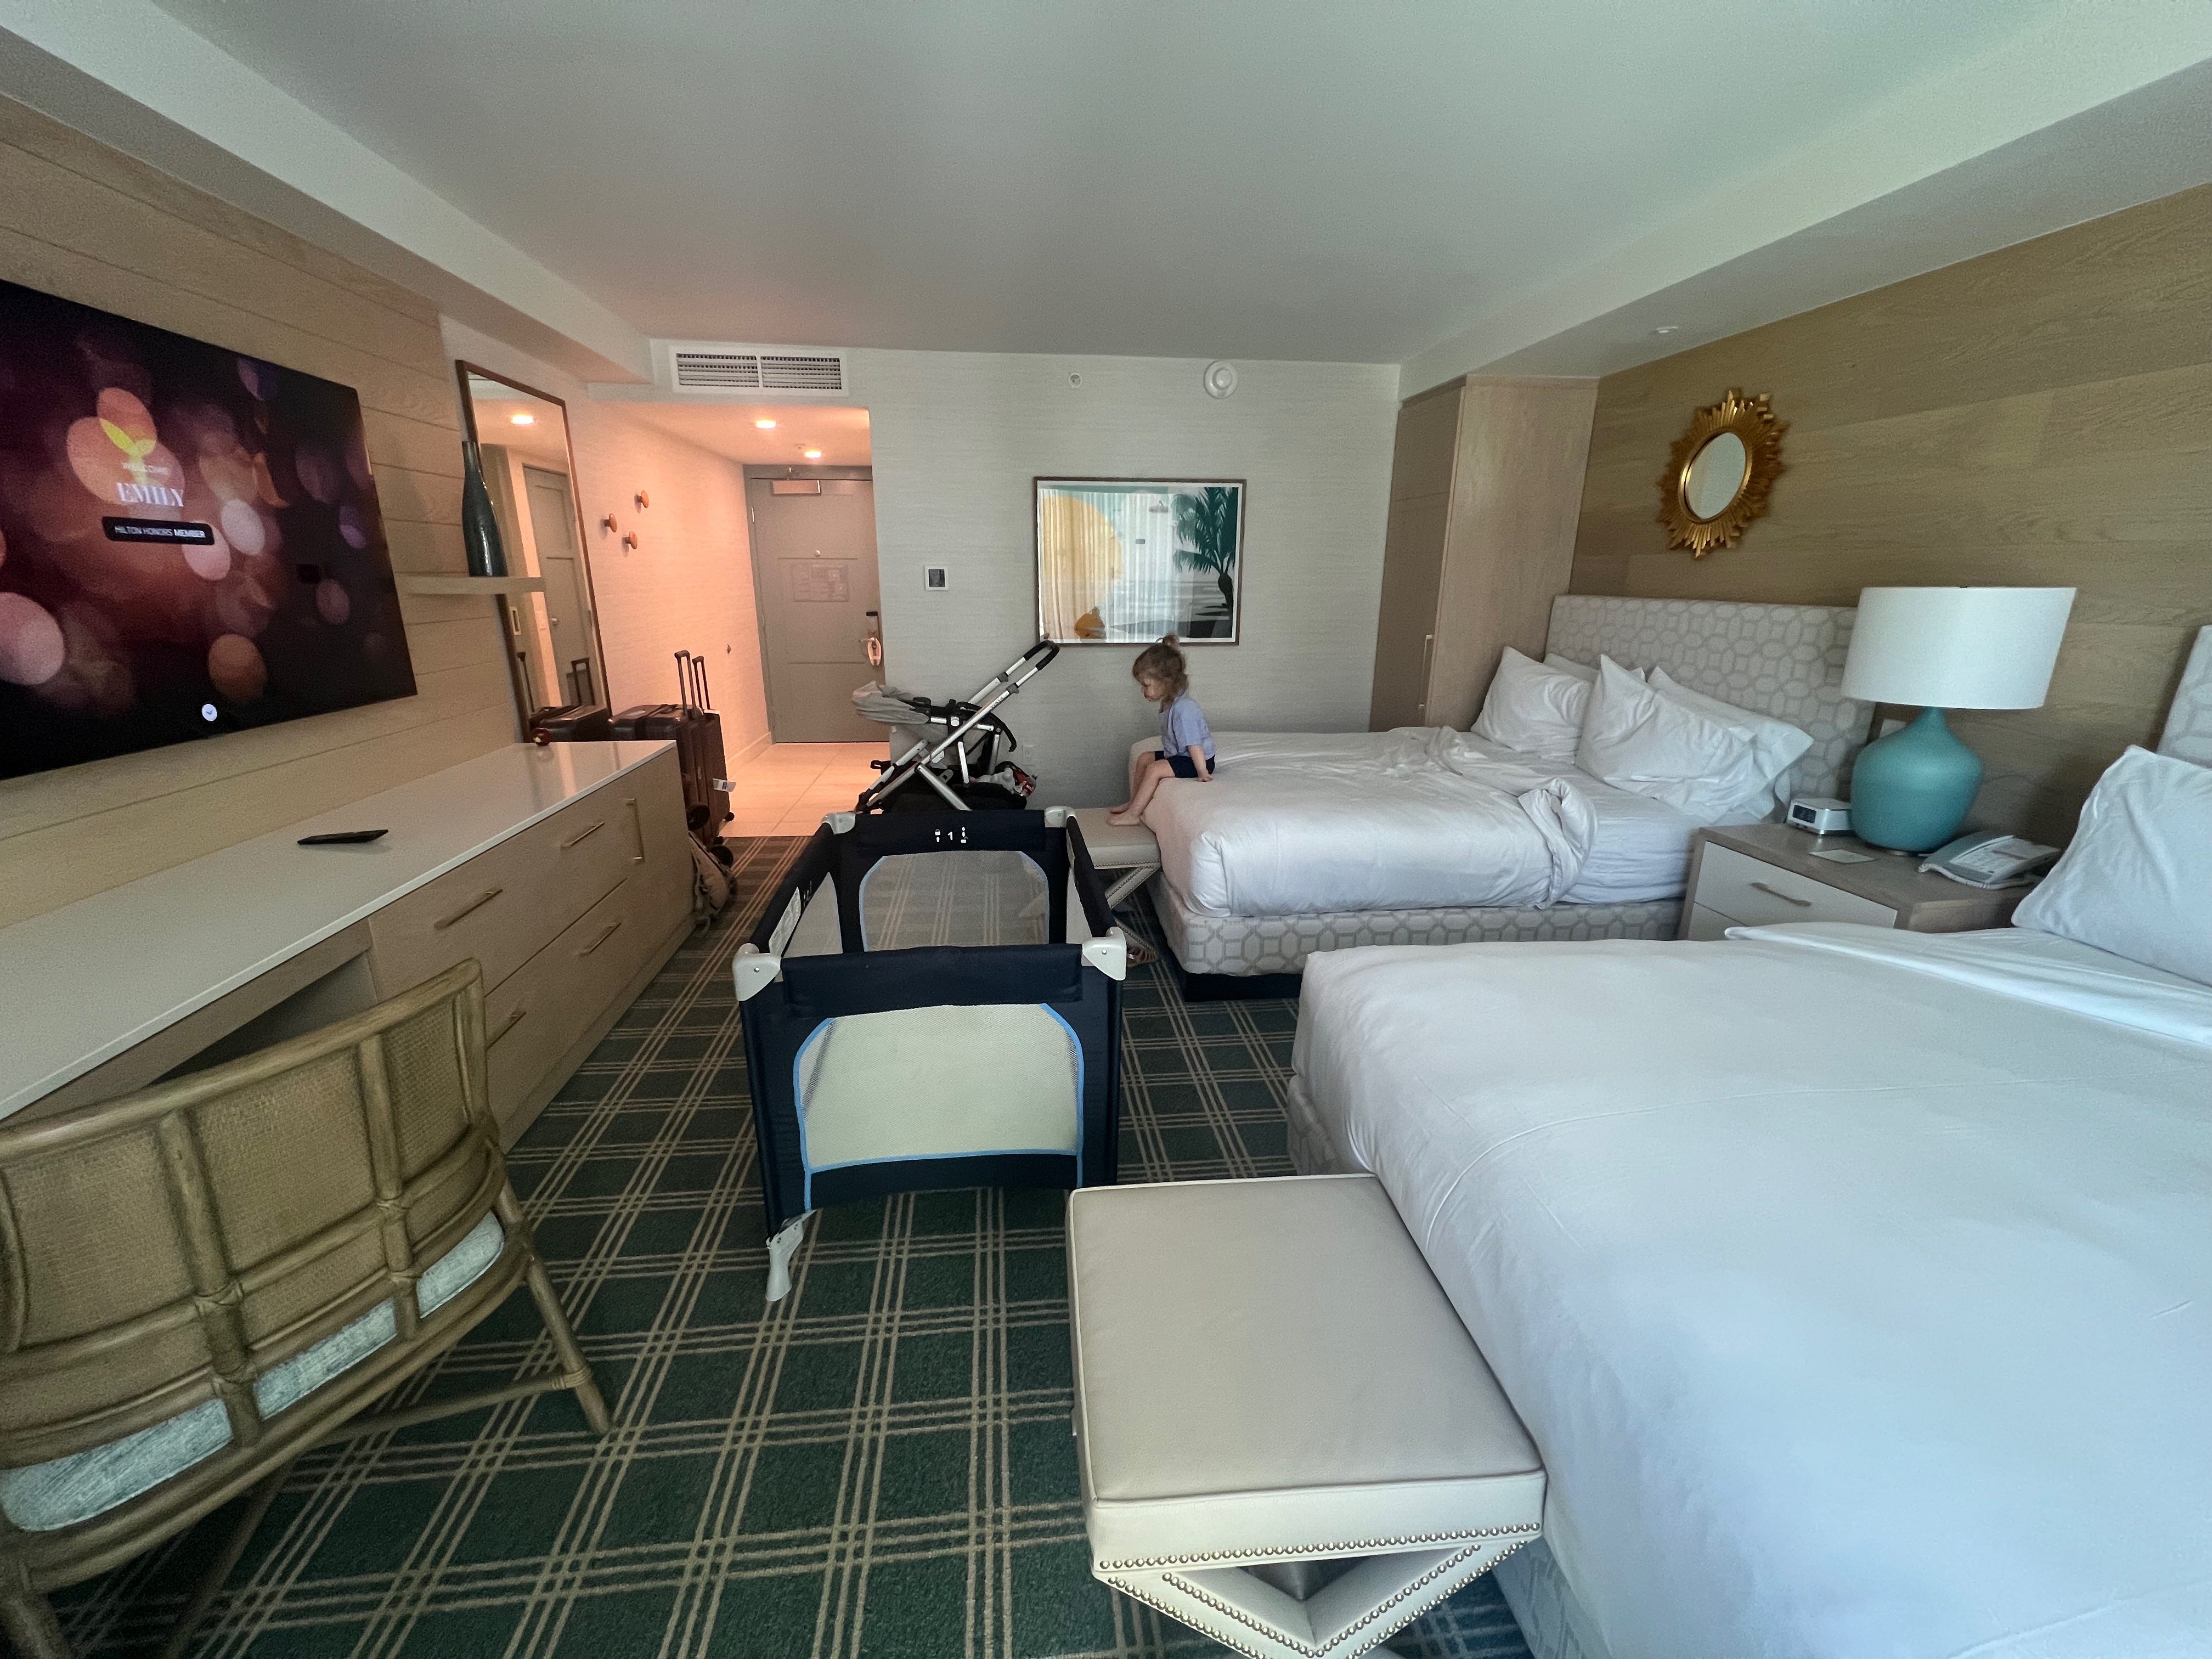 Ein Hotelzimmer mit zwei Betten, auf dem ein Kind sitzt, einem Reisebett, einem Schreibtisch und Gepäck.